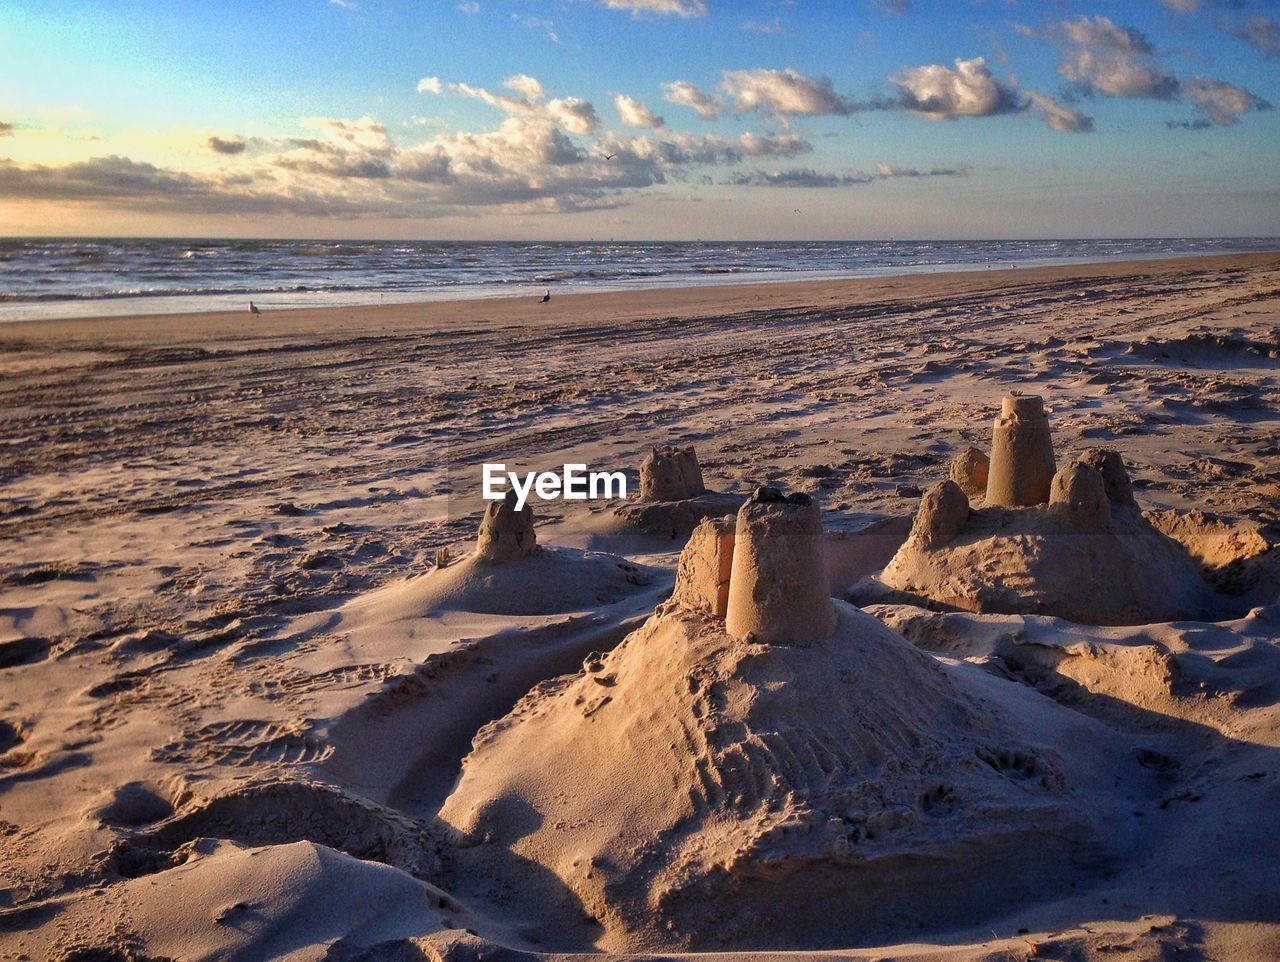 Sand castle on beach against sky